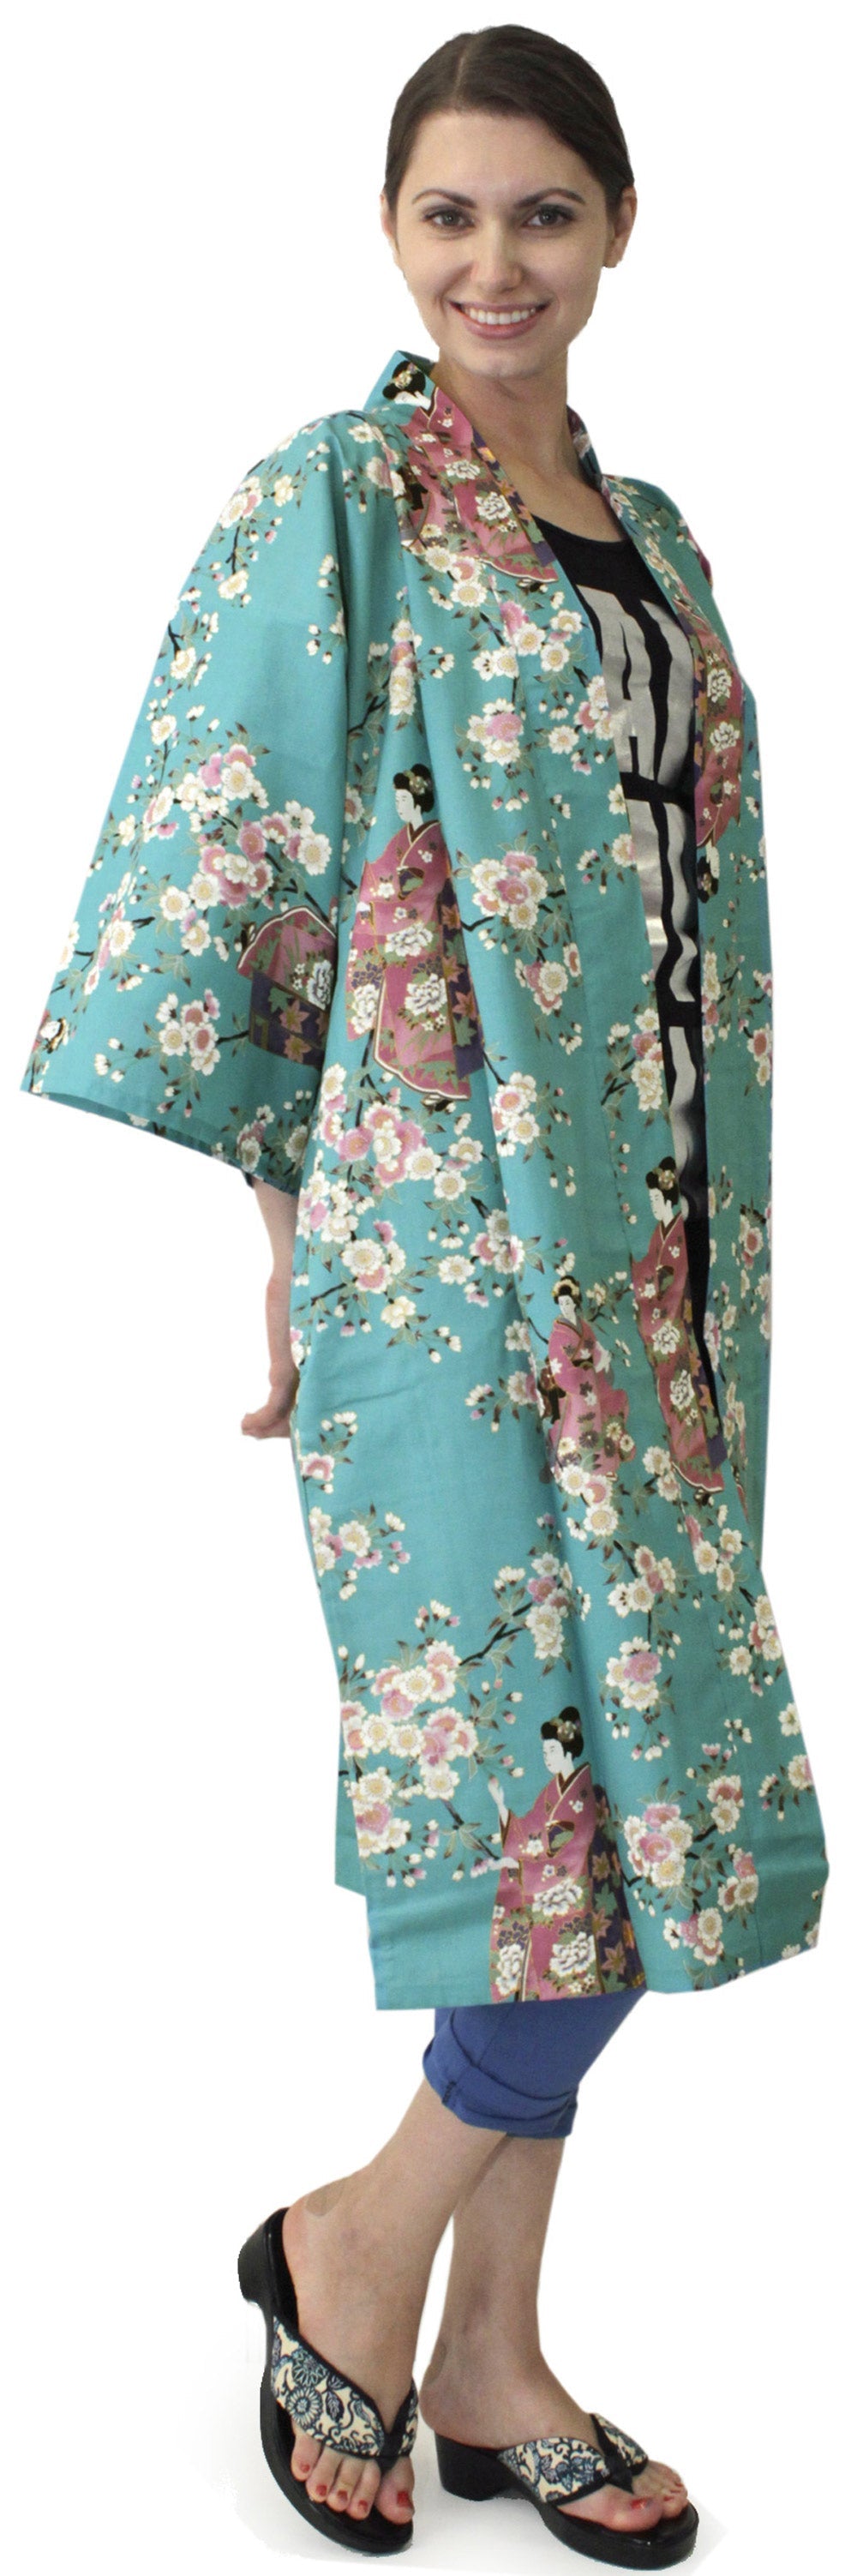 Women's Happi Coat: Kimono Robe - Lovely 